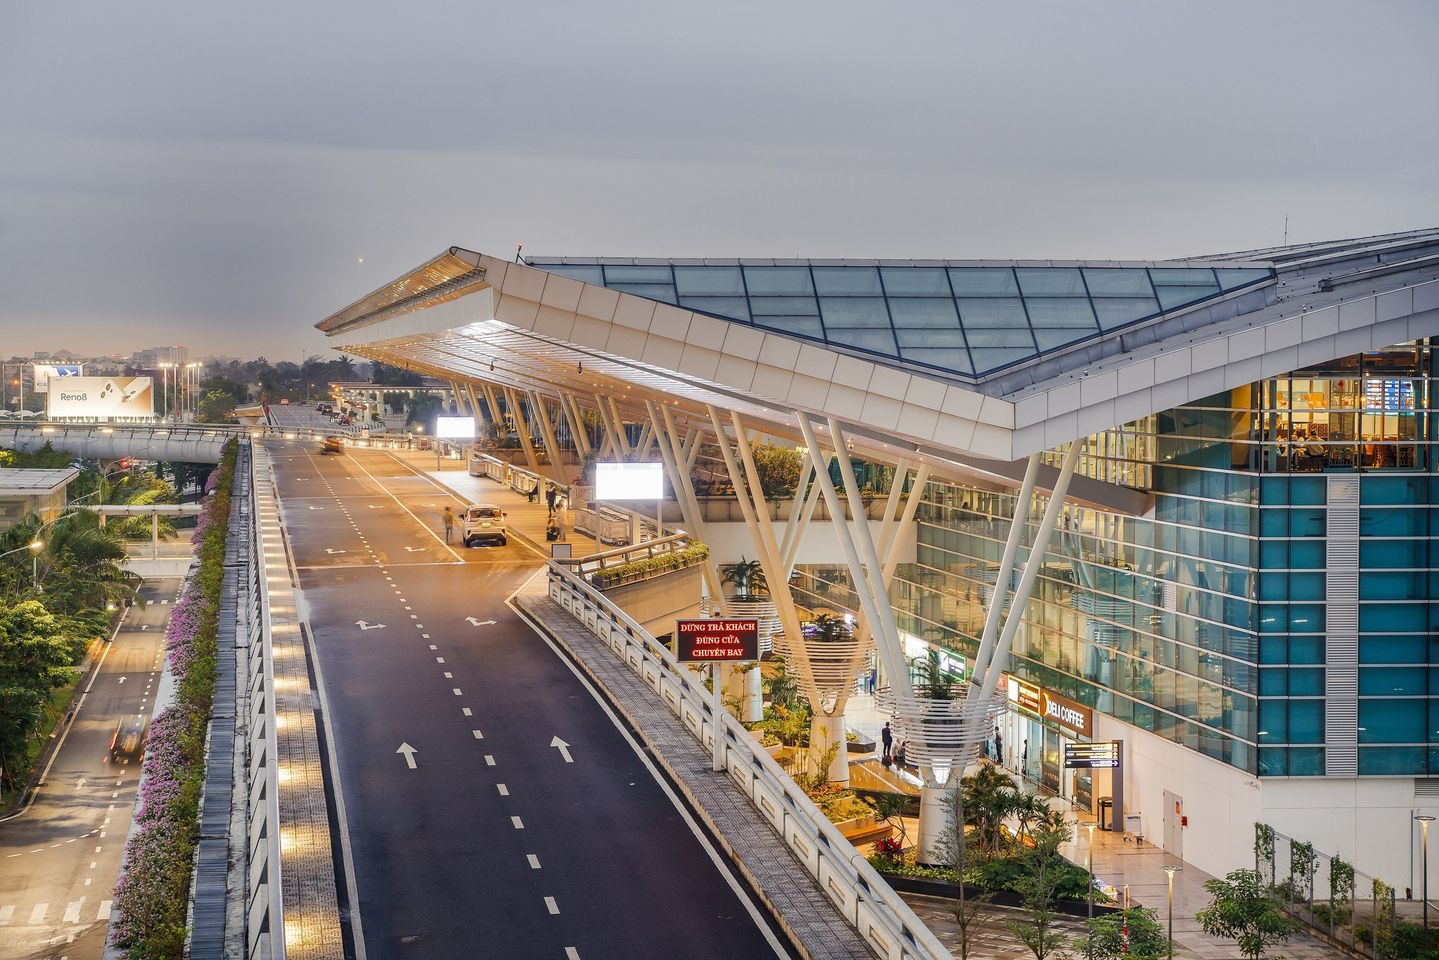 Nhà ga quốc tế sân bay Đà Nẵng trở thành nhà ga đầu tiên tại Việt Nam đạt tiêu chuẩn 5 sao của Skytrax.jpg